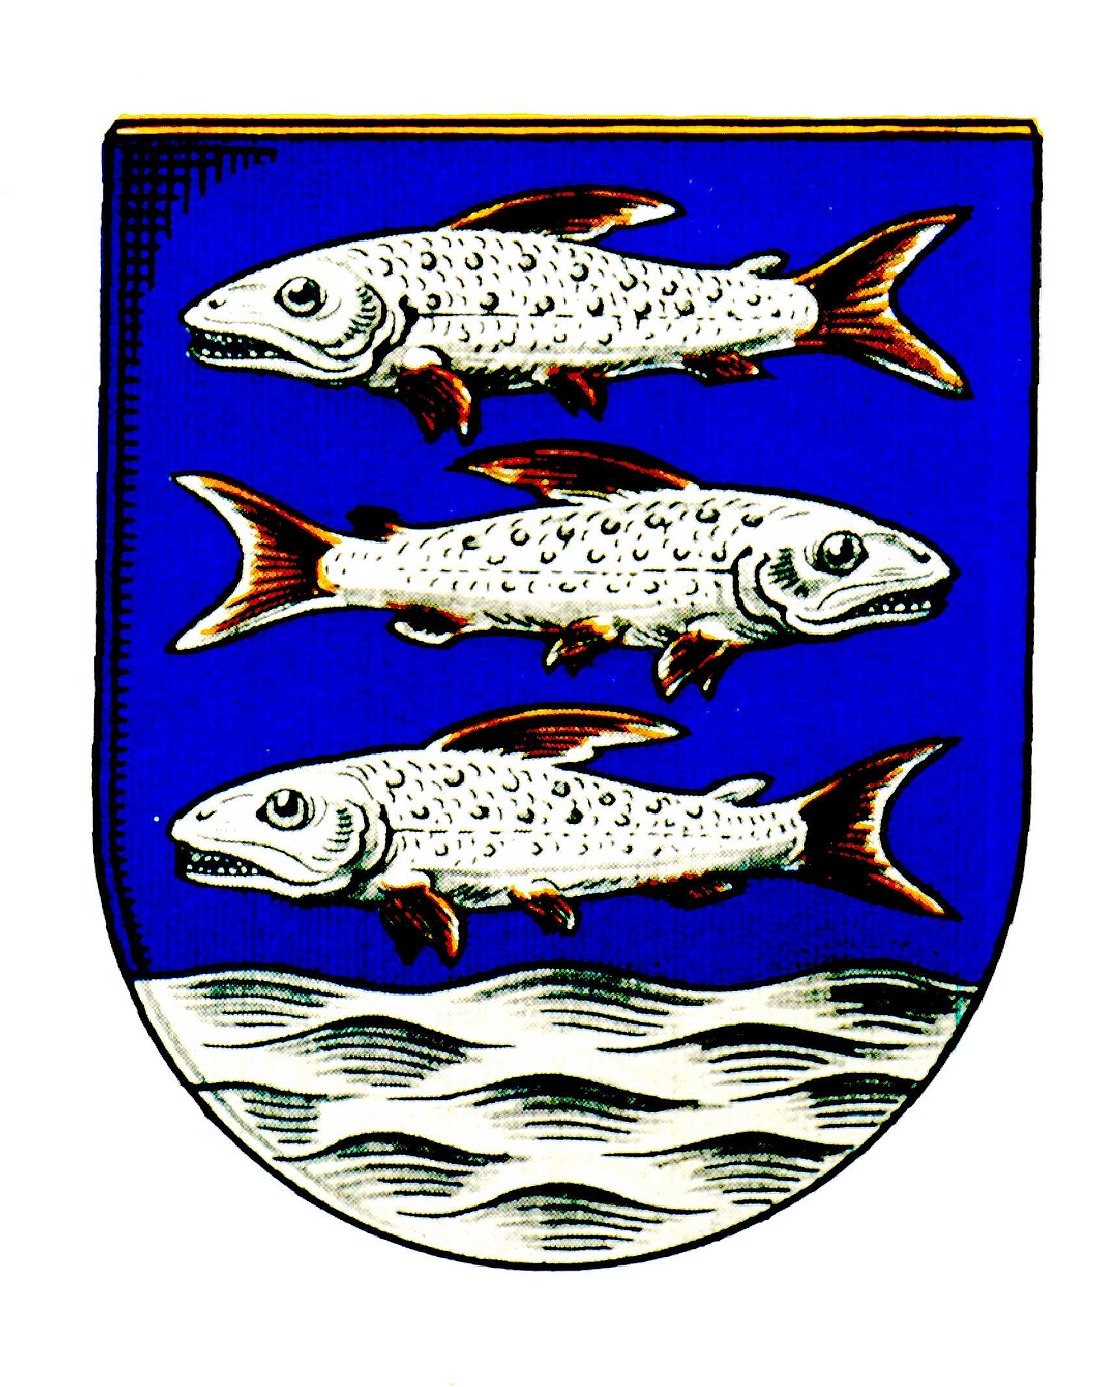 Wappen von Langenholzen